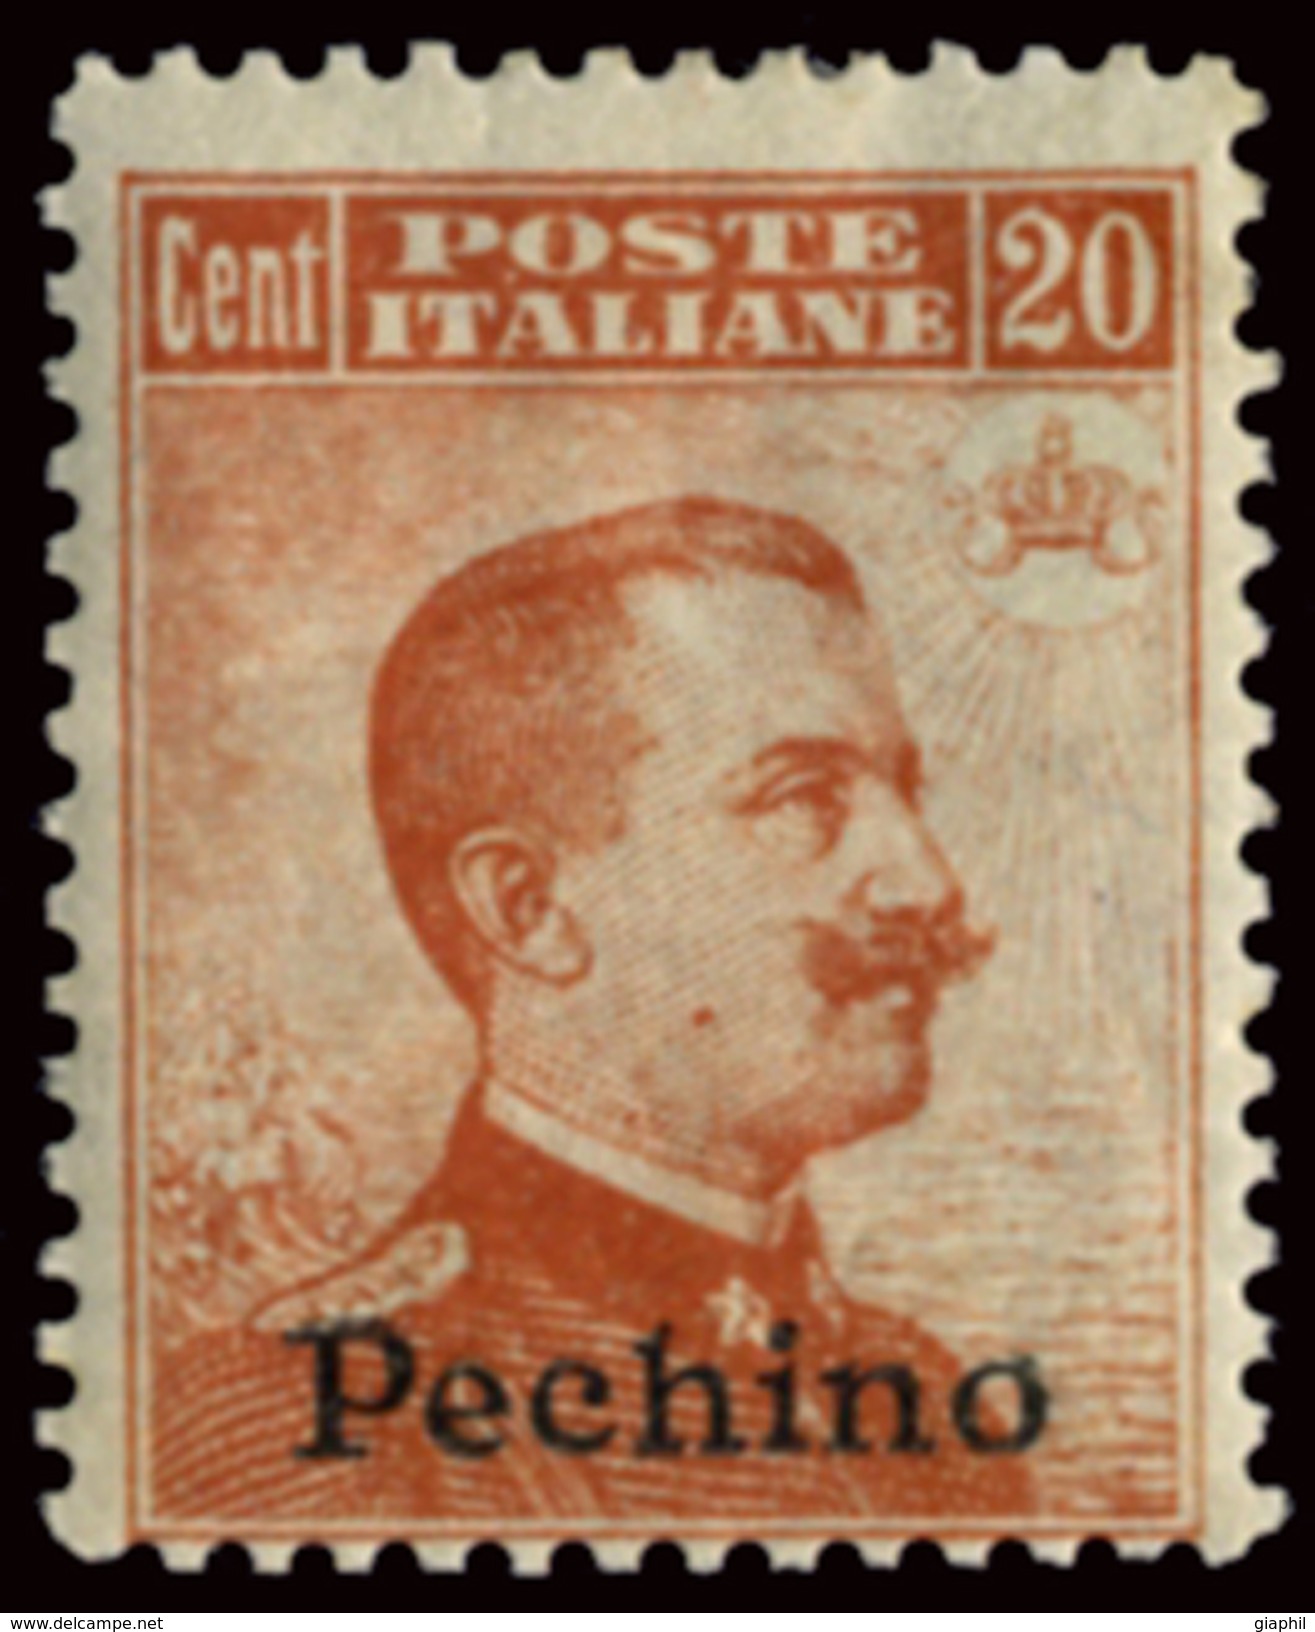 ITALY ITALIA BEIJING PECHINO 1917 20 CENT. (Sass. 12) NUOVO LINGUELLATO OFFERTA! - Pekin